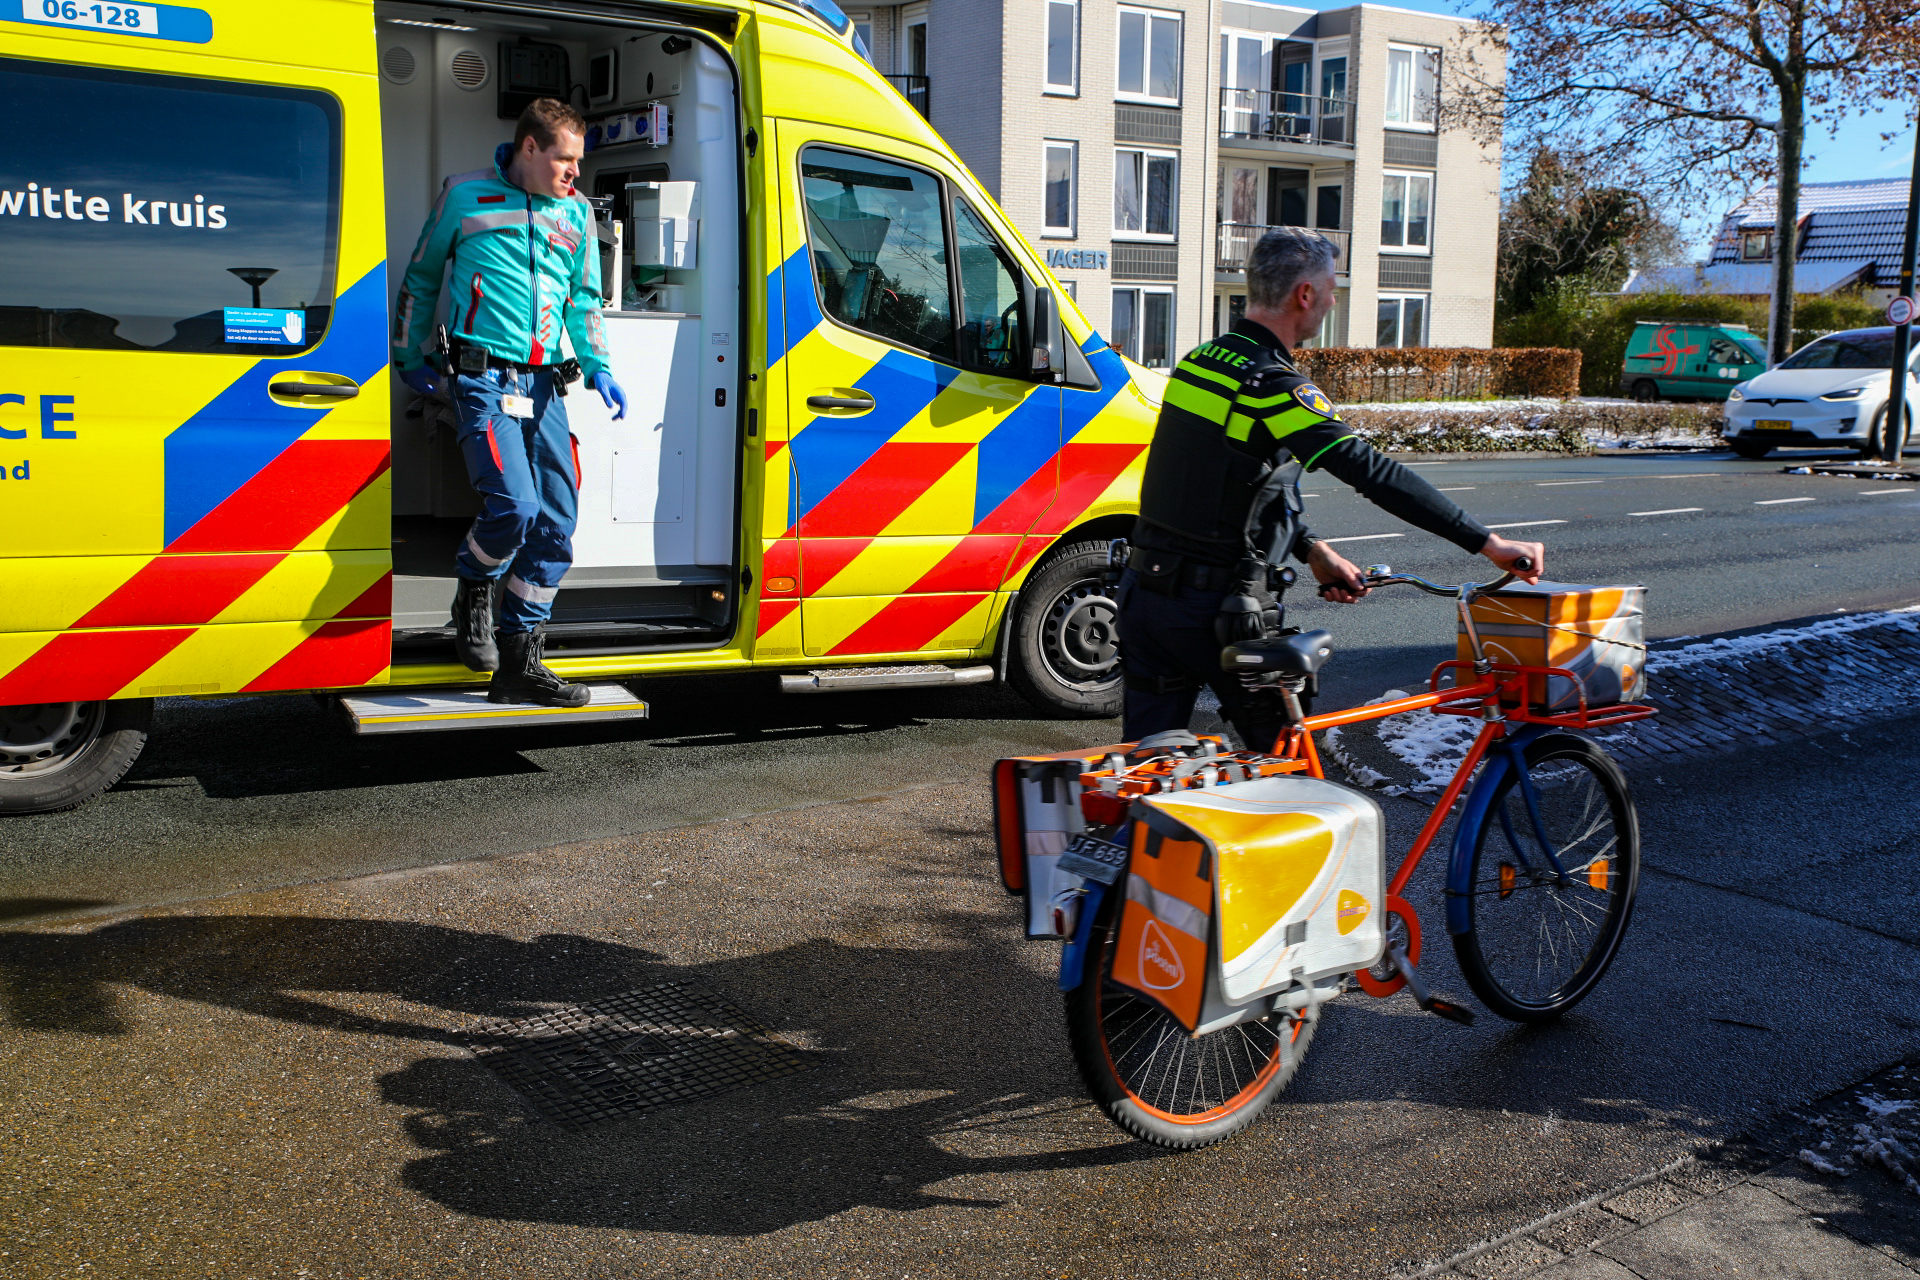 Postbode gewond na botsing met auto in Apeldoorn.